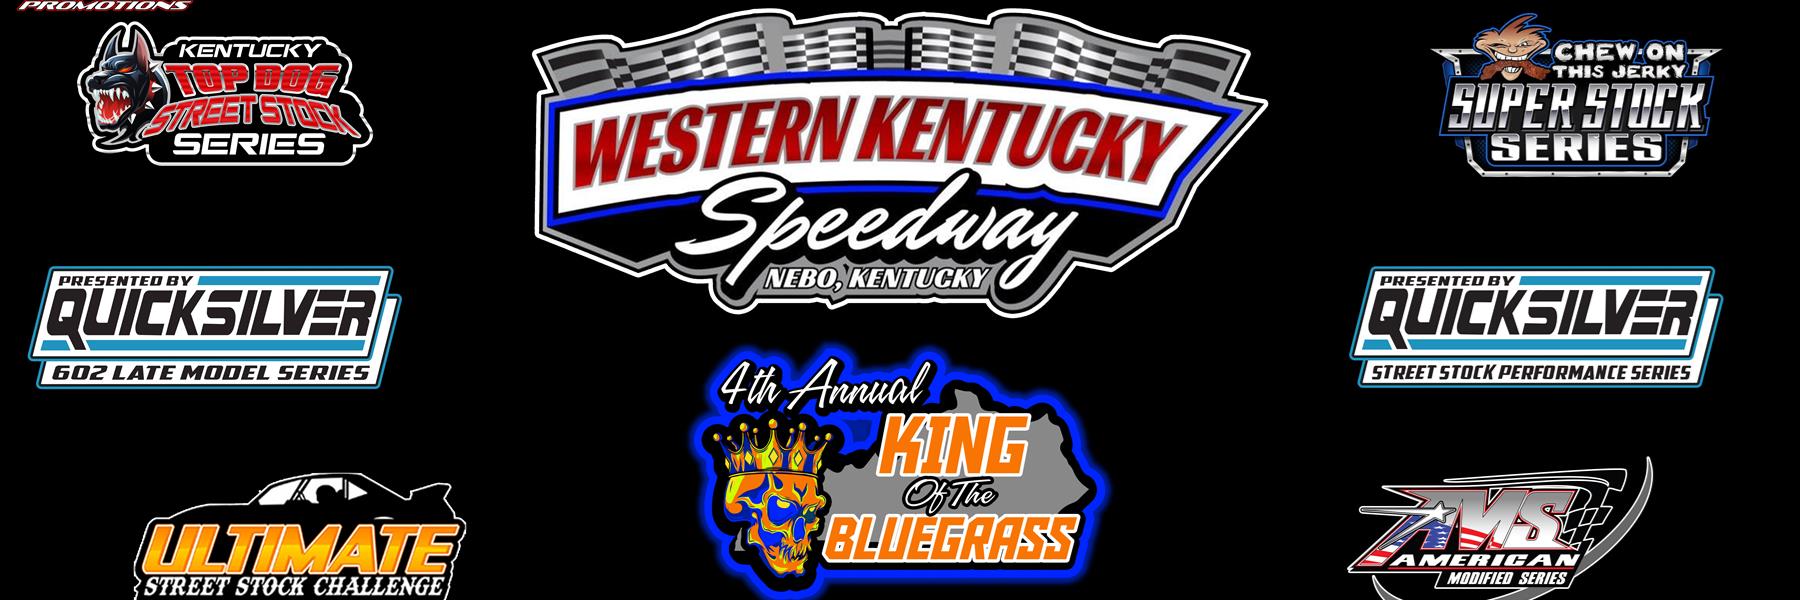 3/20/2022 - Western Kentucky Speedway